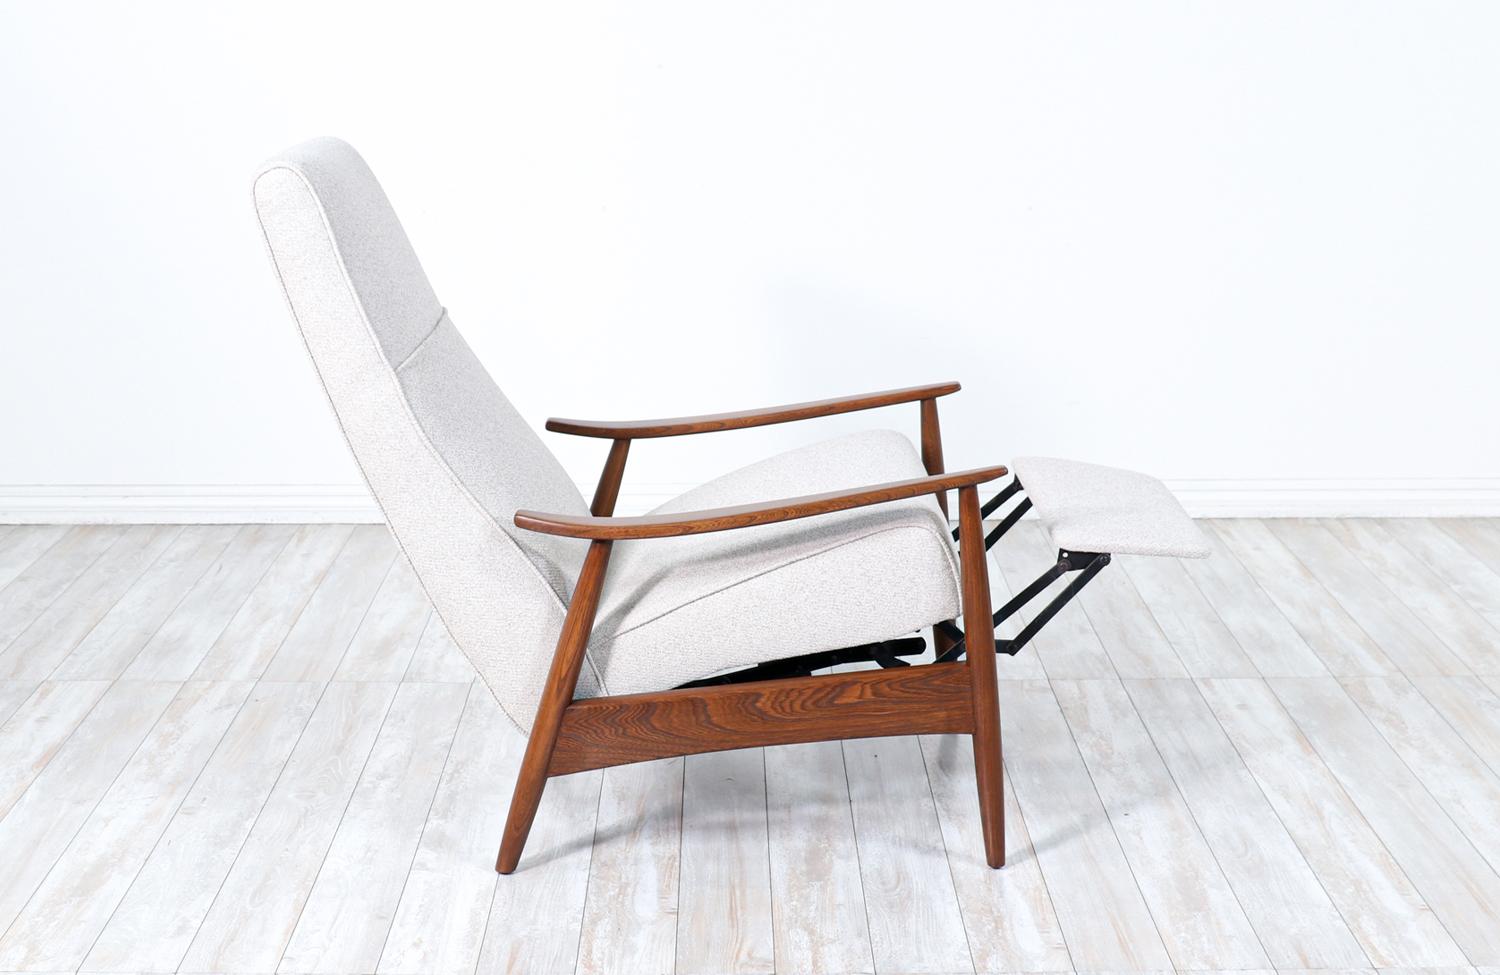 Élégant fauteuil inclinable conçu par Milo Baughman pour James Inc. aux États-Unis vers les années 1950. Ce confortable fauteuil inclinable de style moderne du milieu du siècle est doté d'une assise nouvellement rembourrée en tissu tweed doux à base